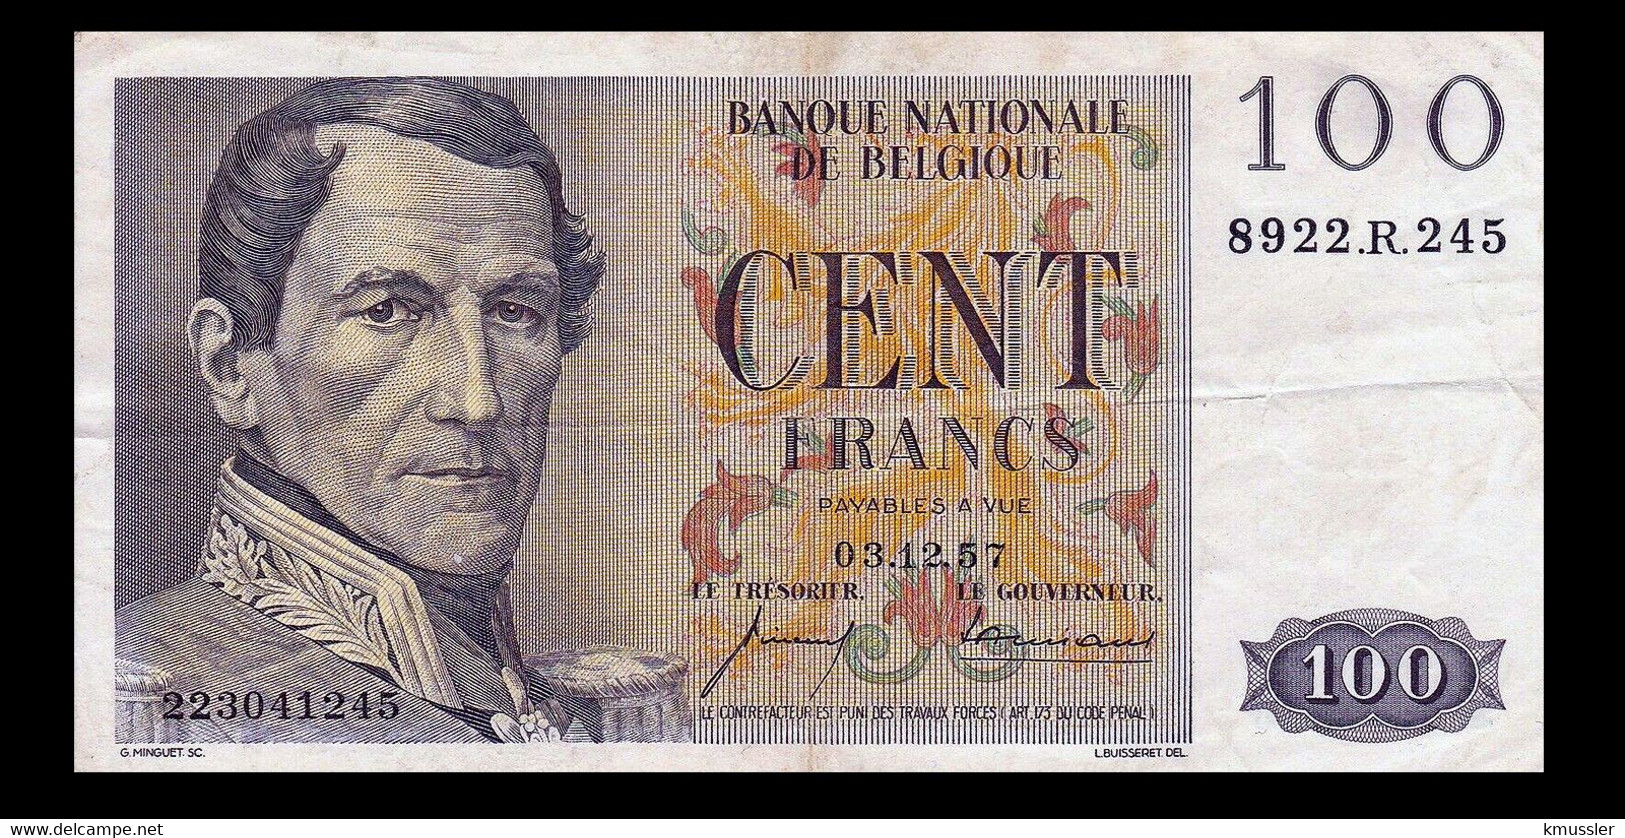 # # # Banknote Belgien (Belgium) 100 Francs 1957 # # # - 100 Francos